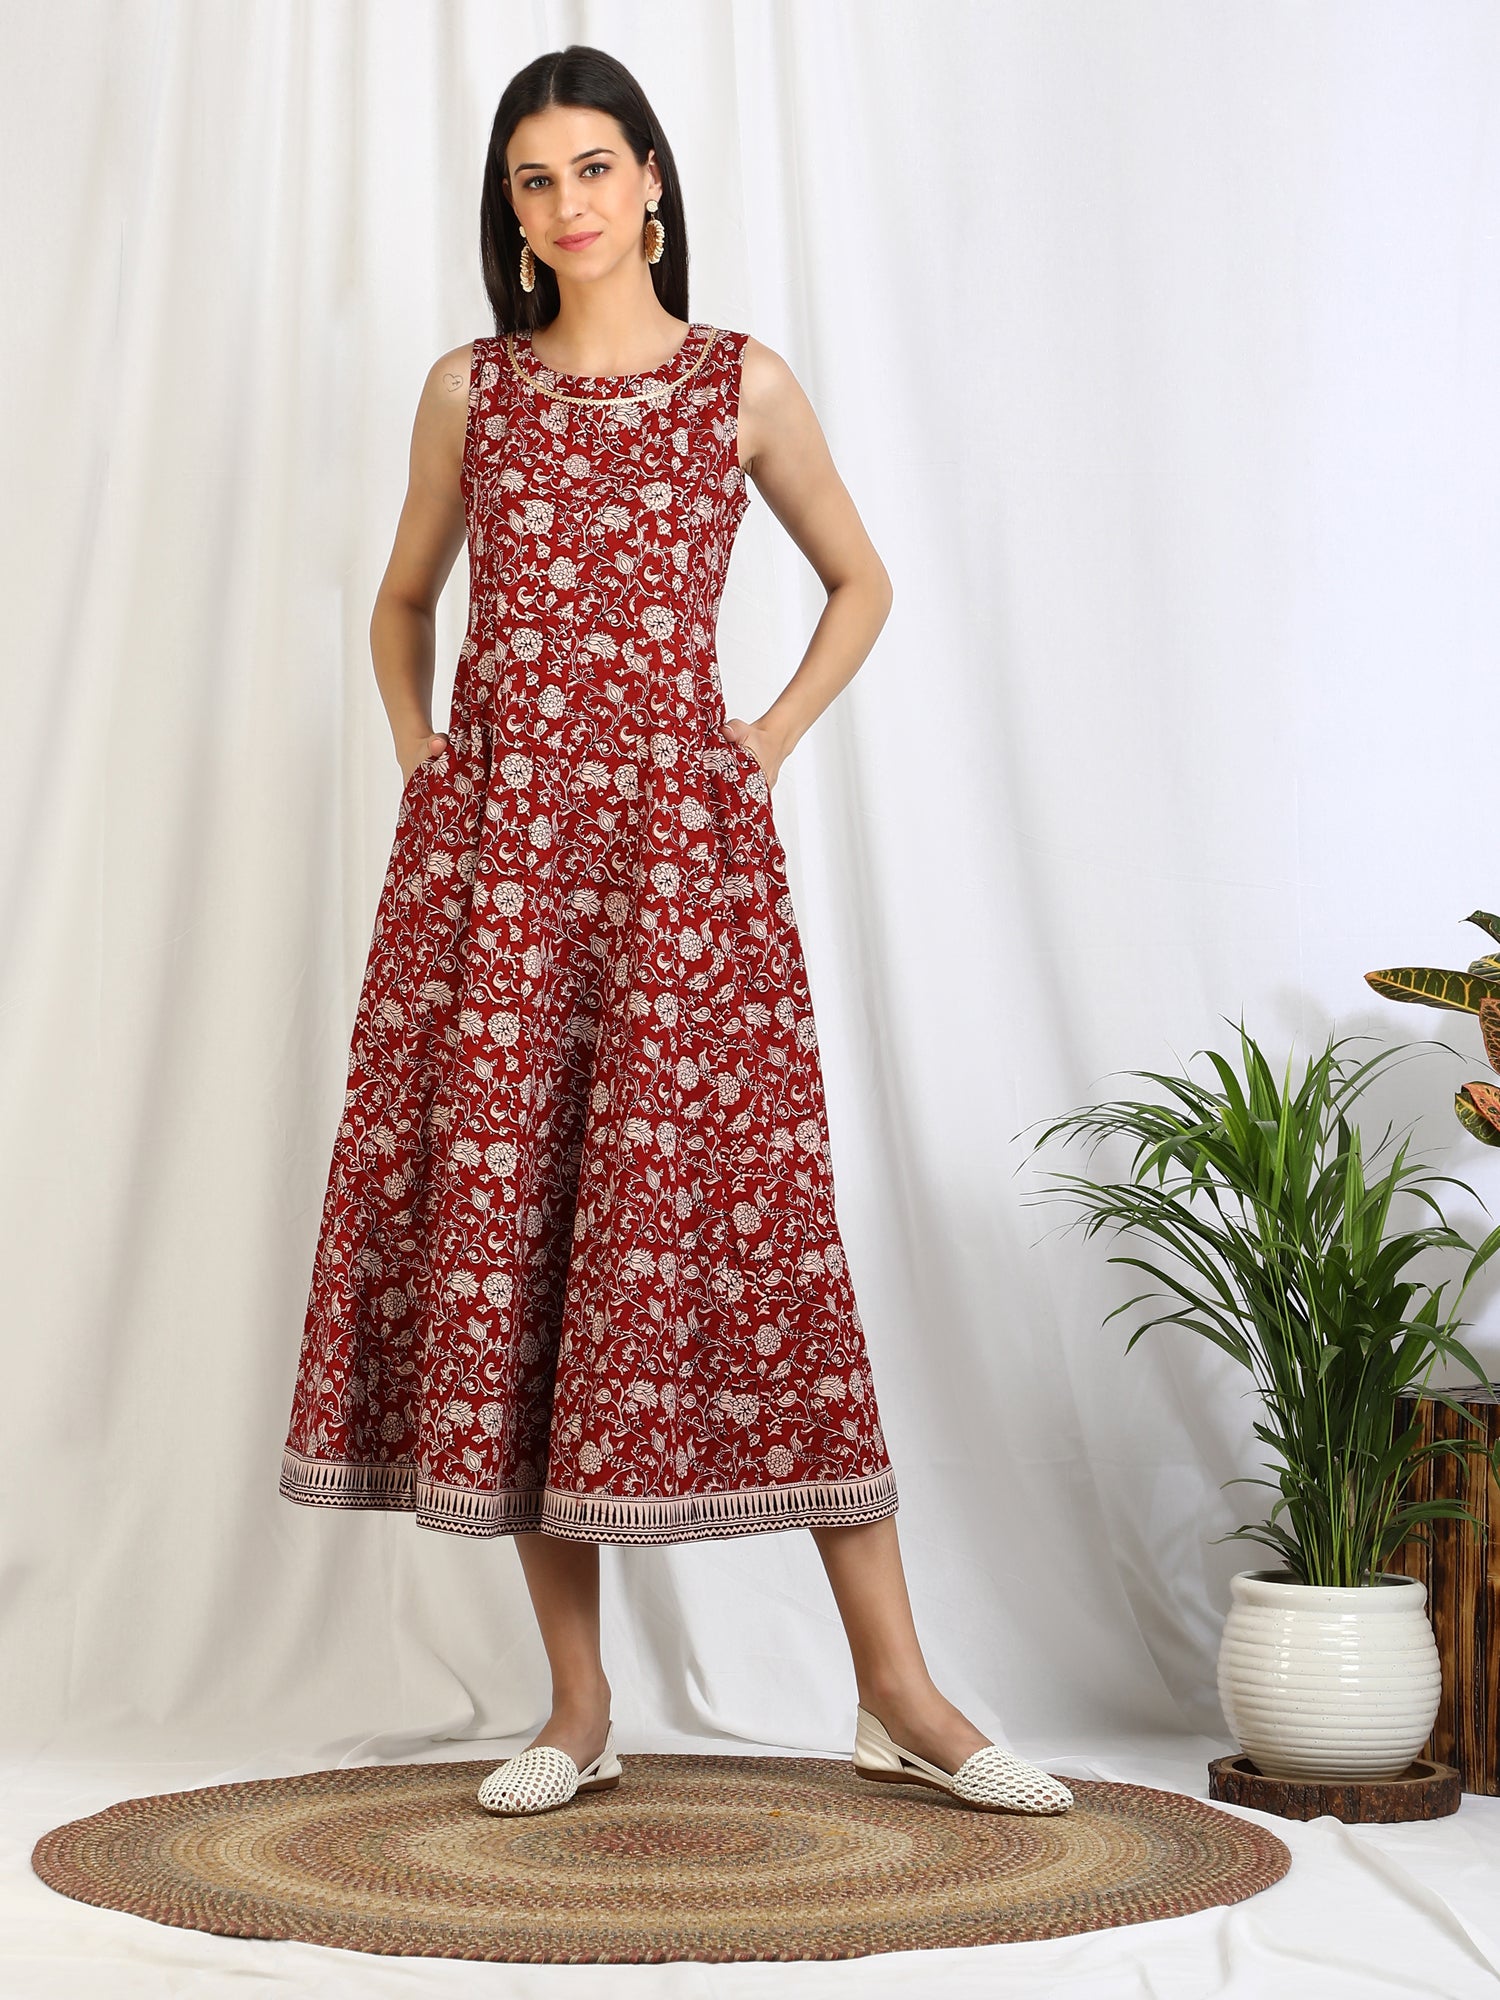 Cotton Salwar Suits Uk | Indian Cotton Dresses Online